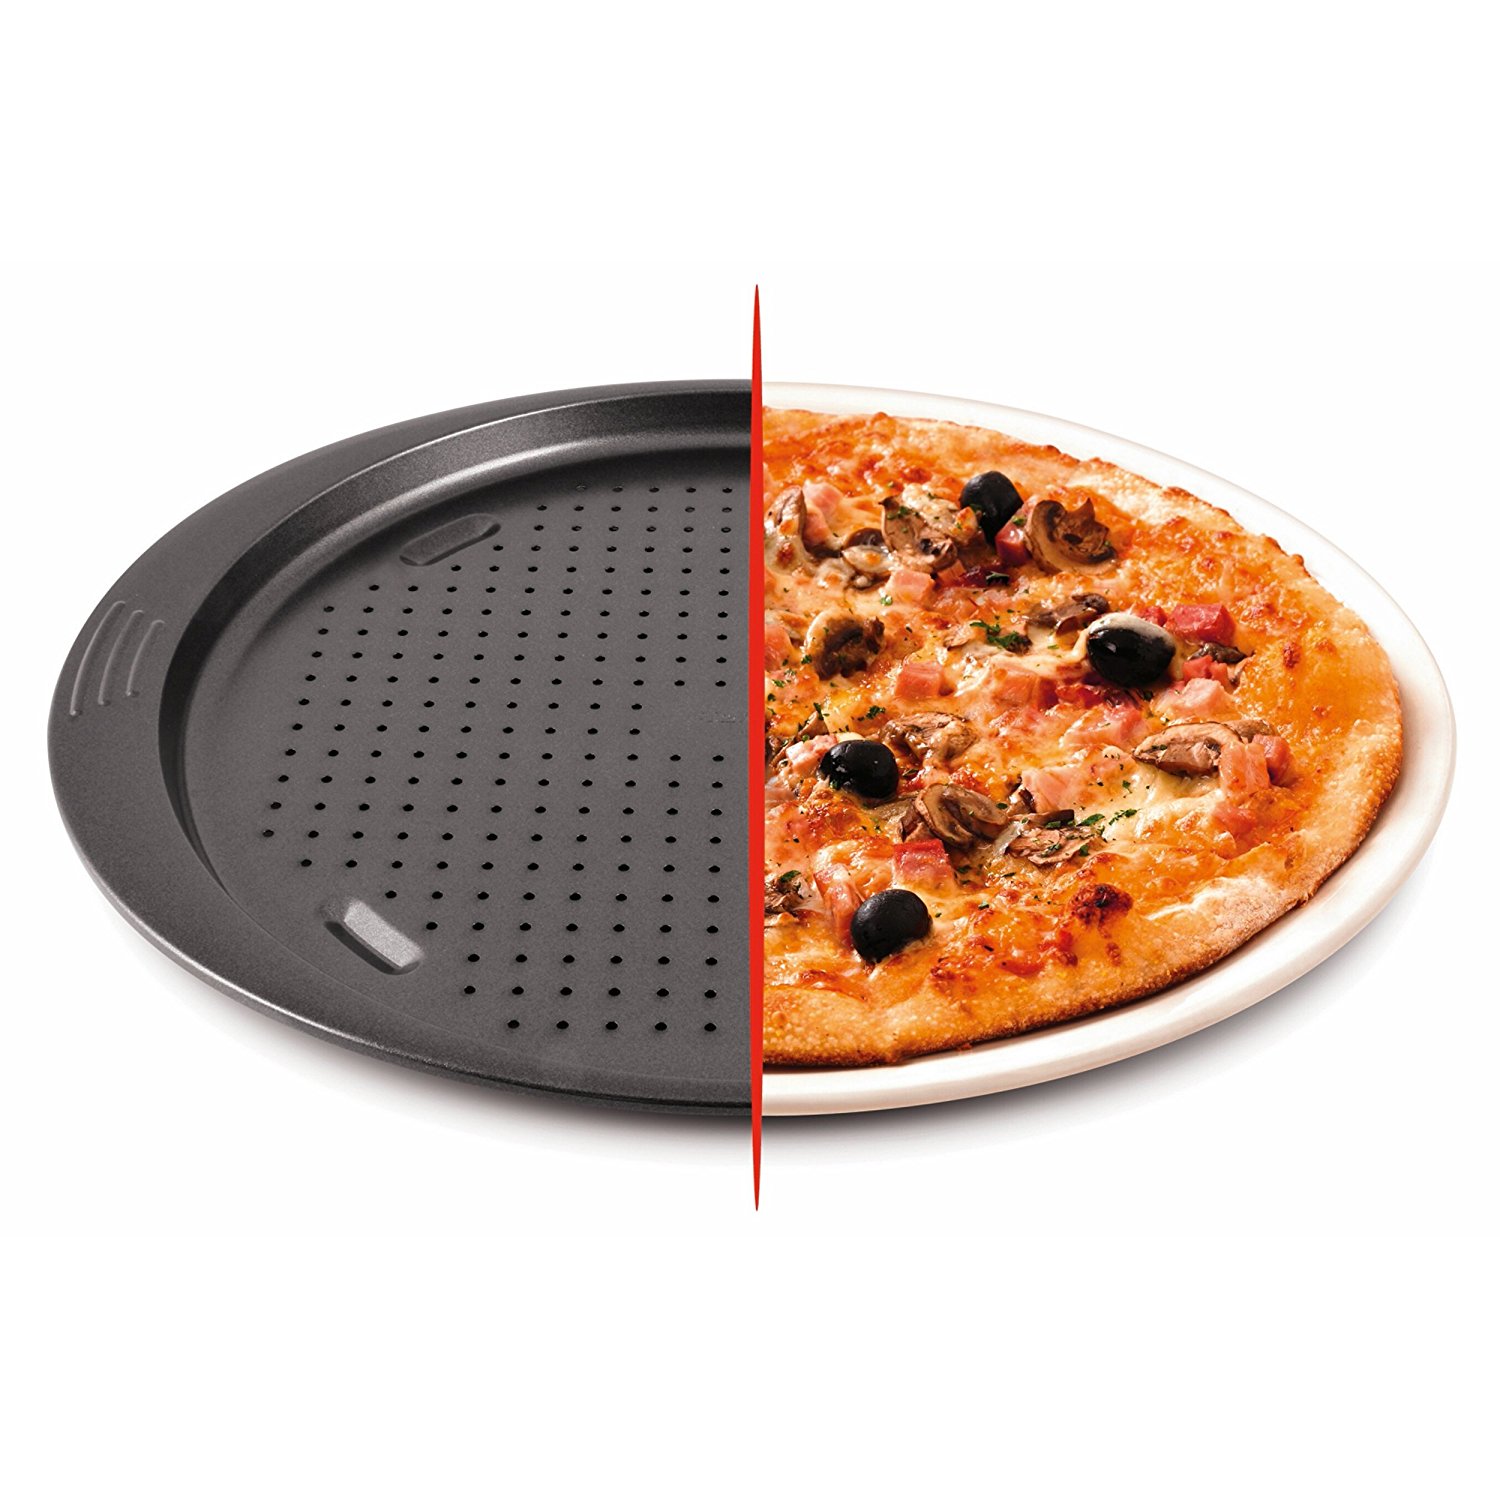 форма для пиццы с дырочками как пользоваться в духовке фото 16